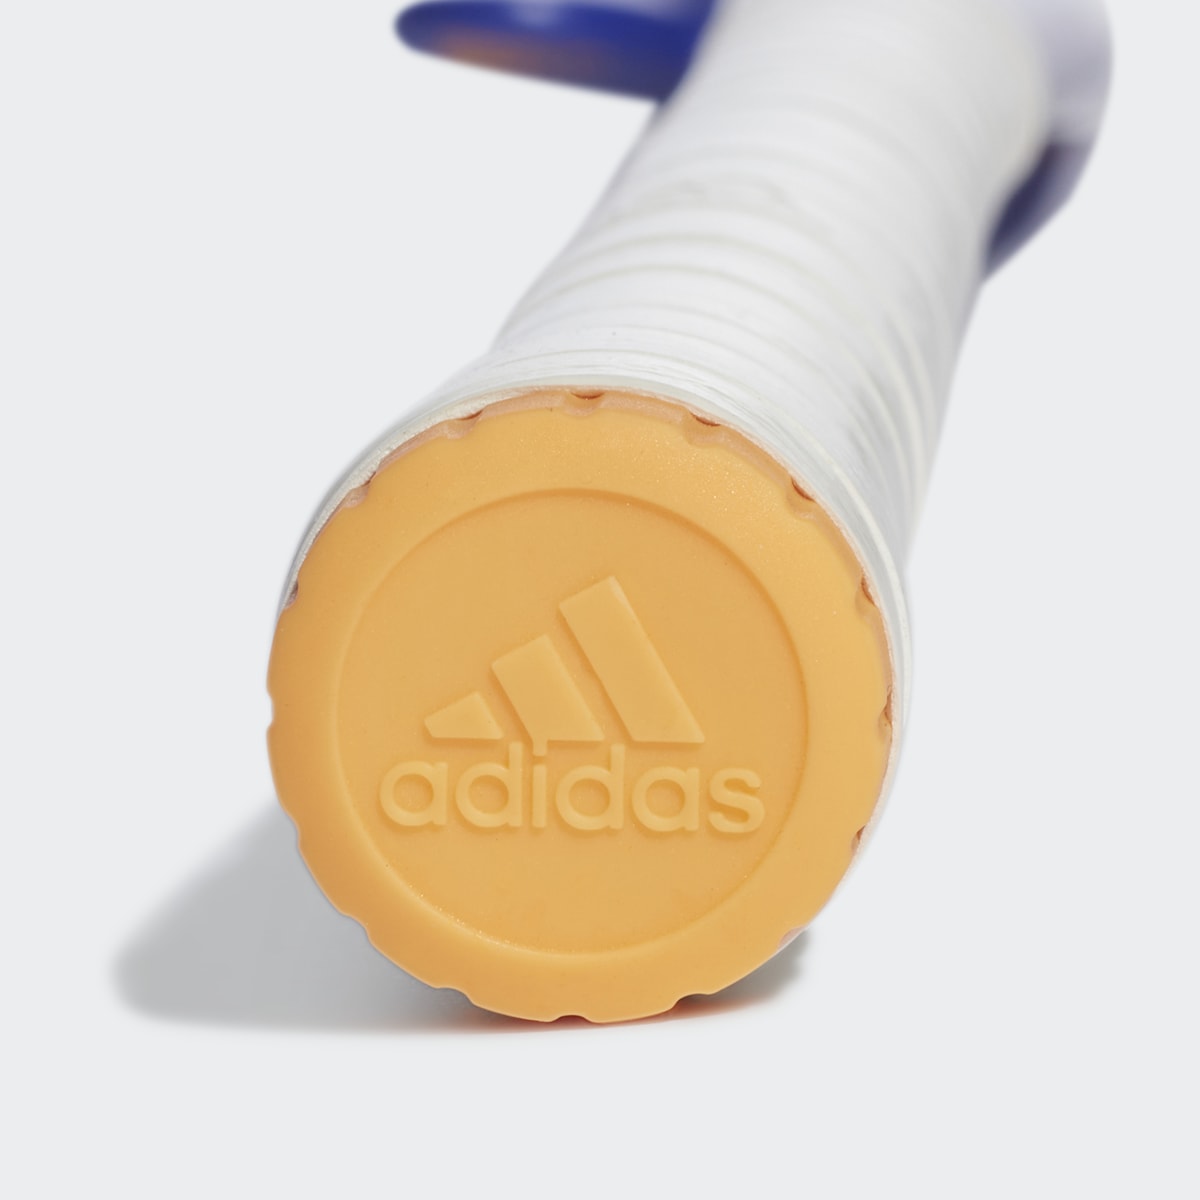 Adidas CHAOSFURY.5 InkGold36.5SL. 5